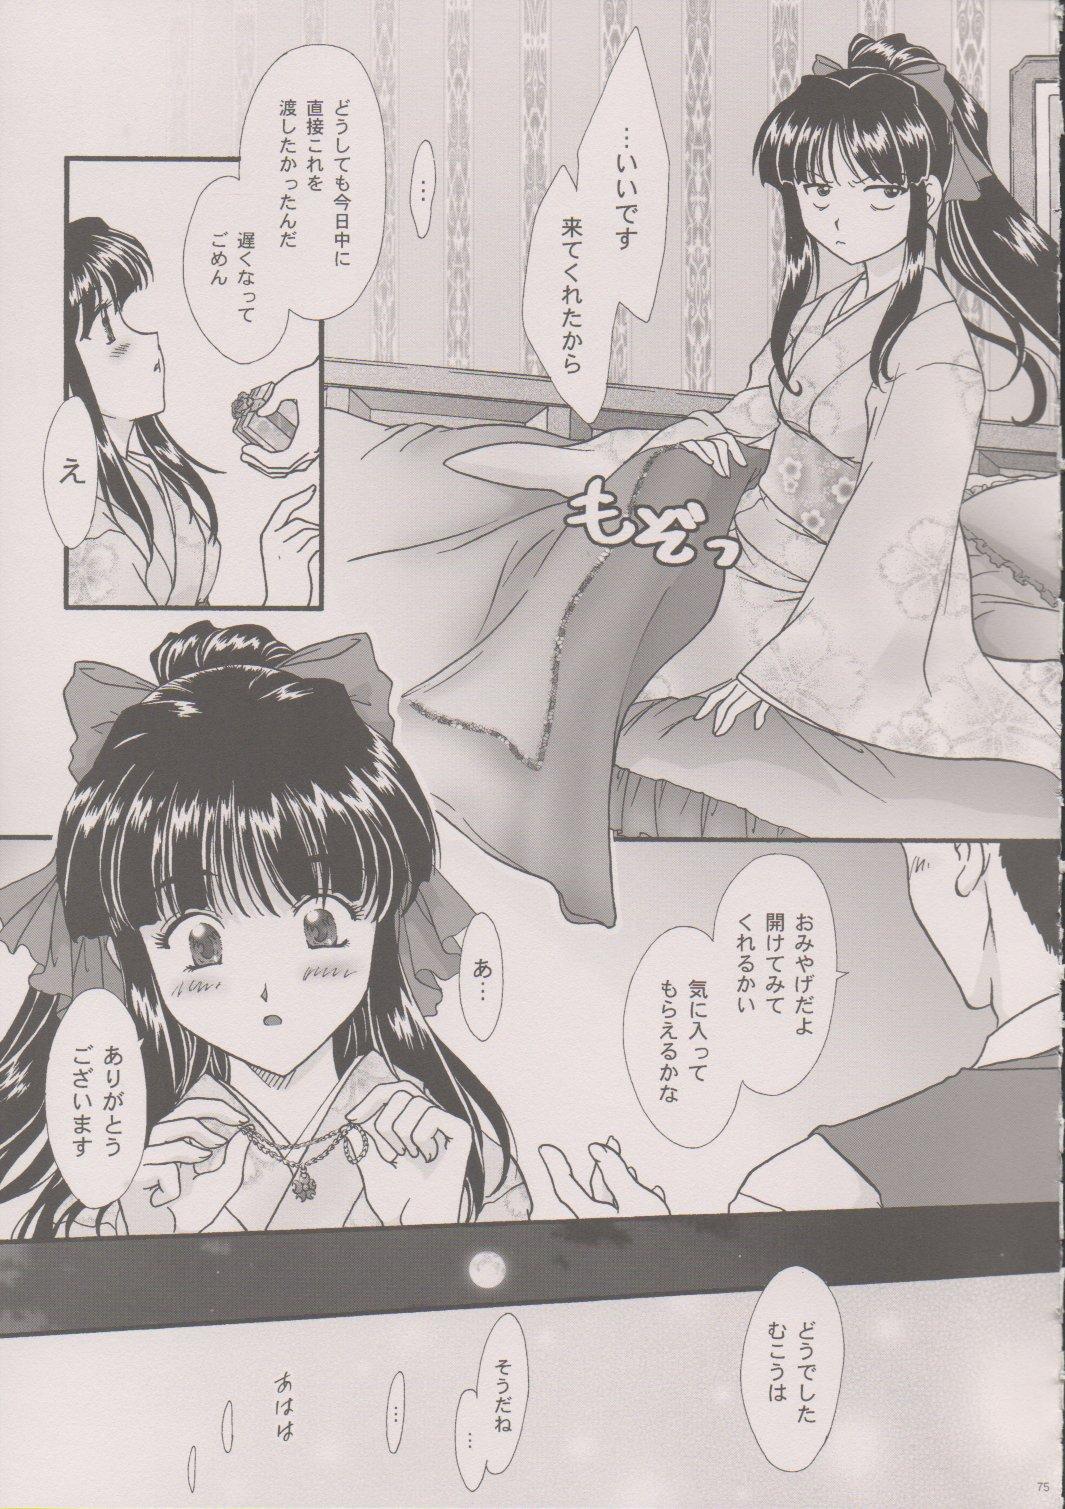 [TSK (Fuuga Utsura)] Maihime ~Karen~ 6 Teito Yori. (Sakura Wars) 73